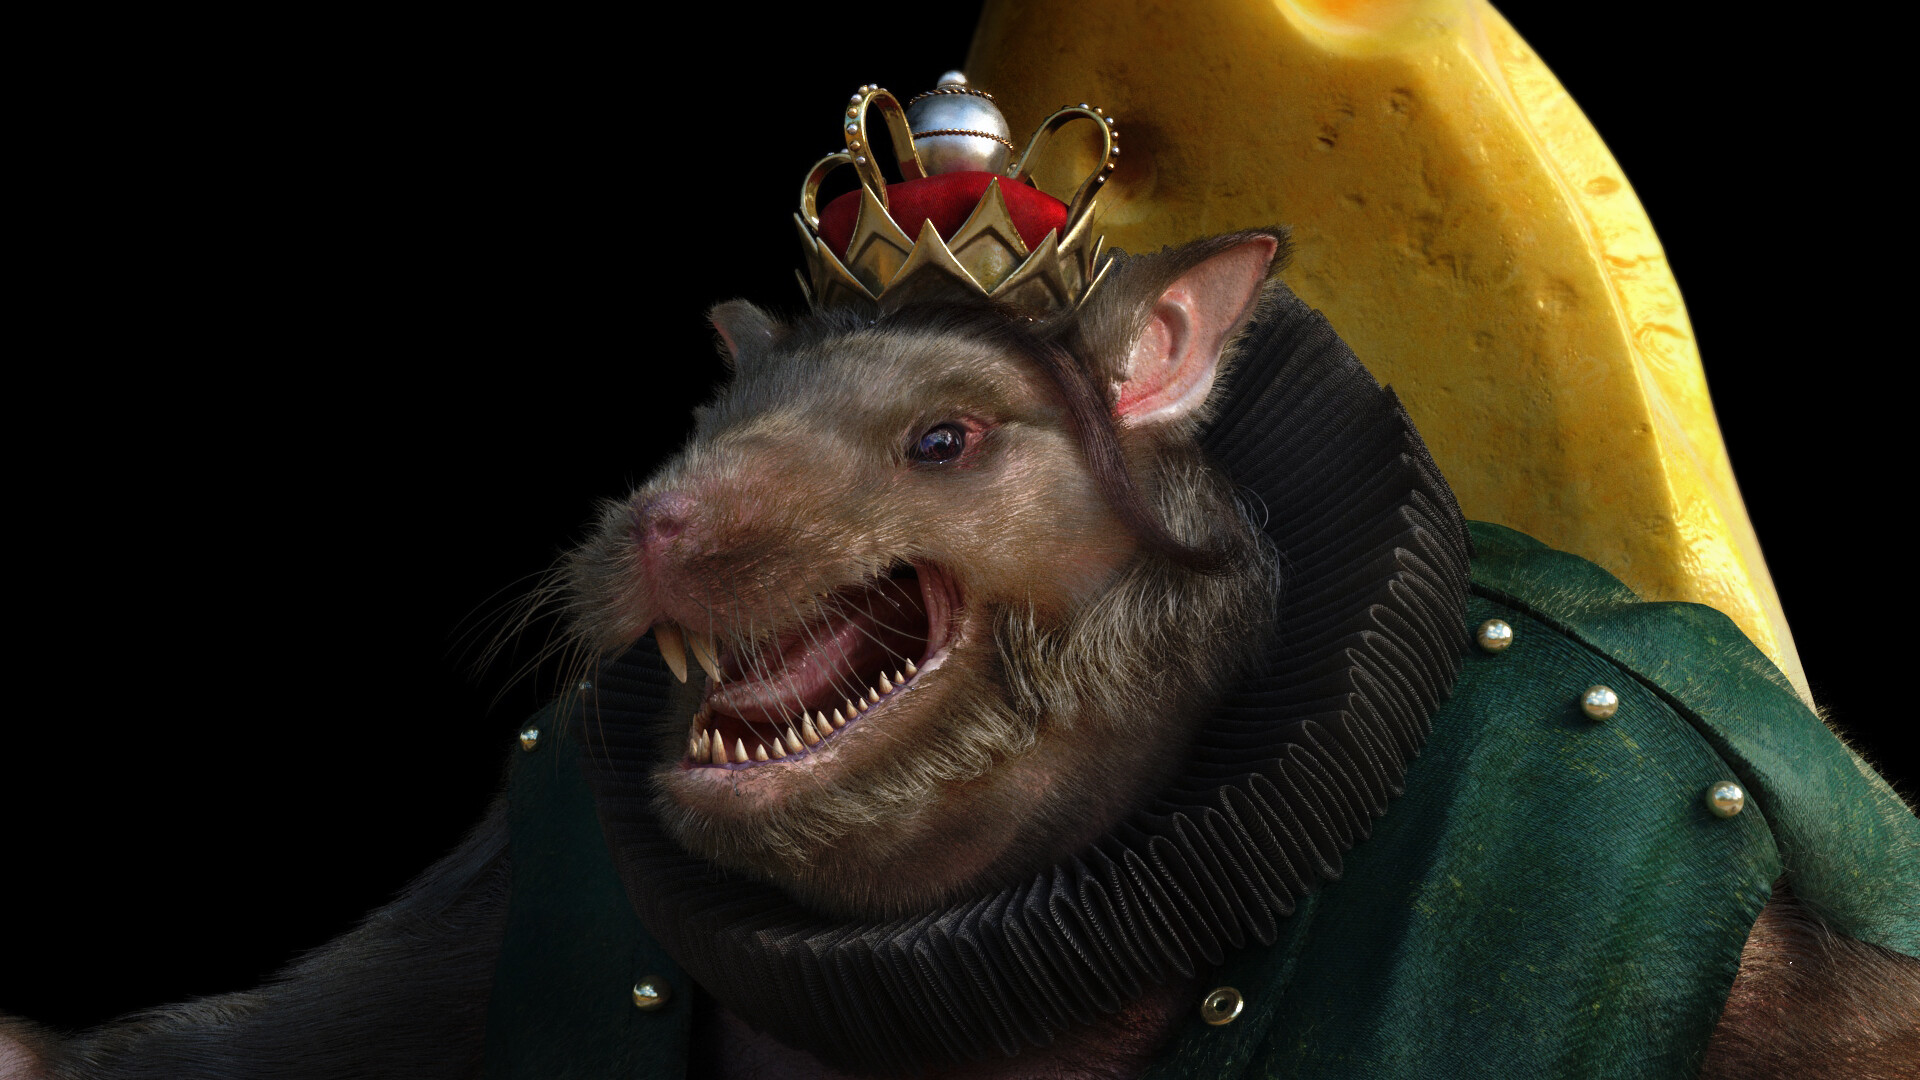 Eggaround Take-in - The rat king